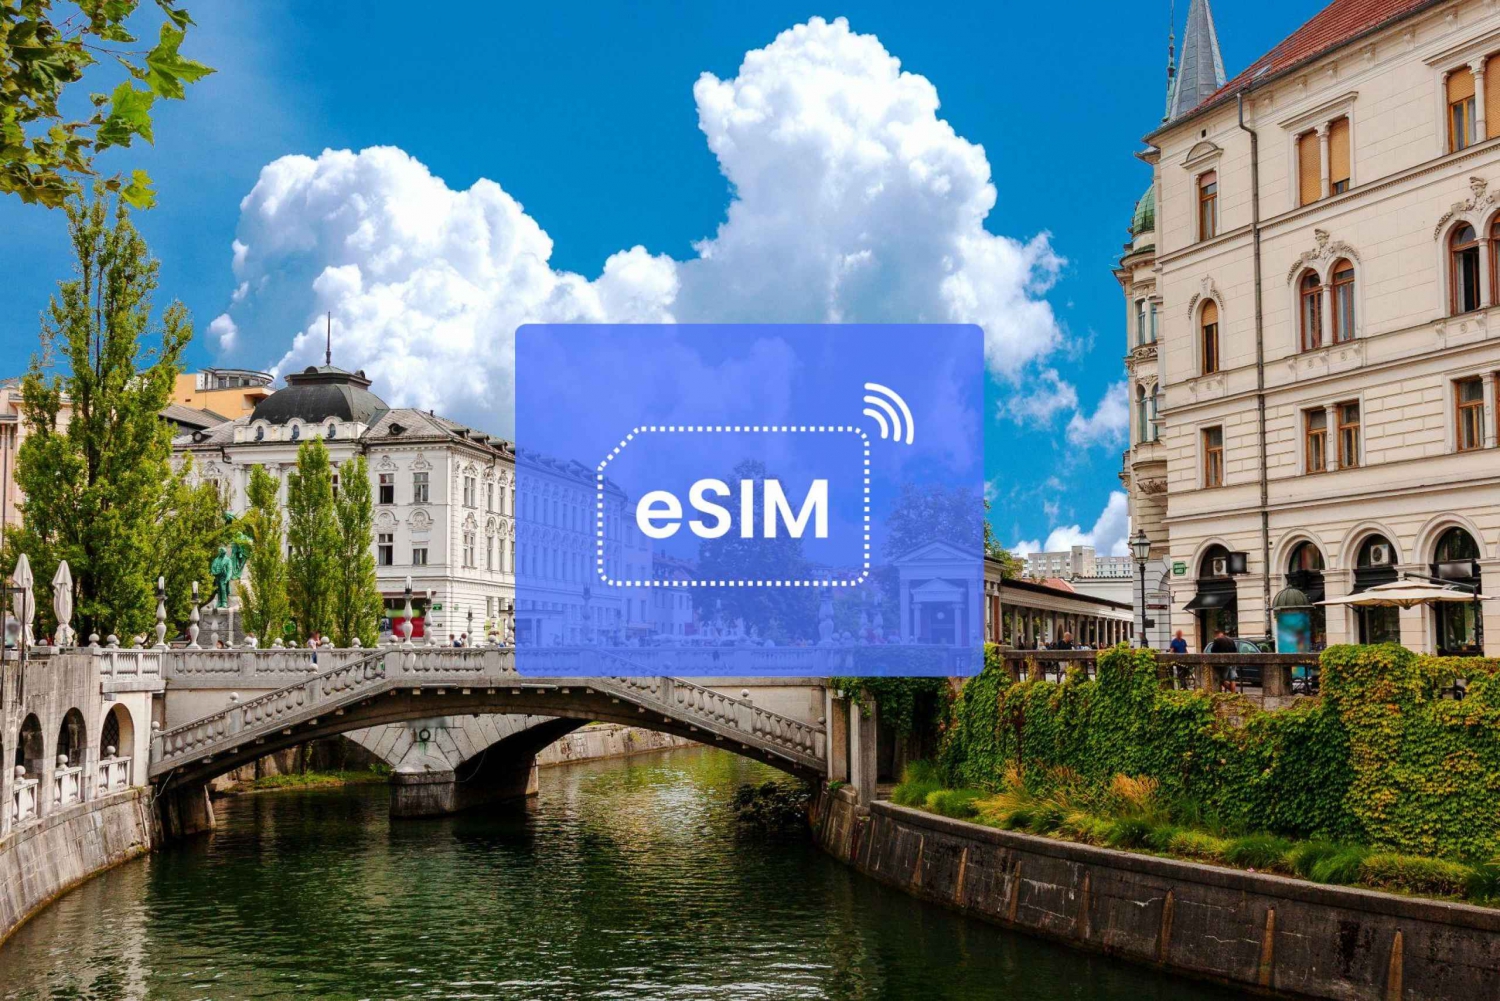 Lubiana: Slovenia/Europa eSIM Roaming Mobile Data Plan